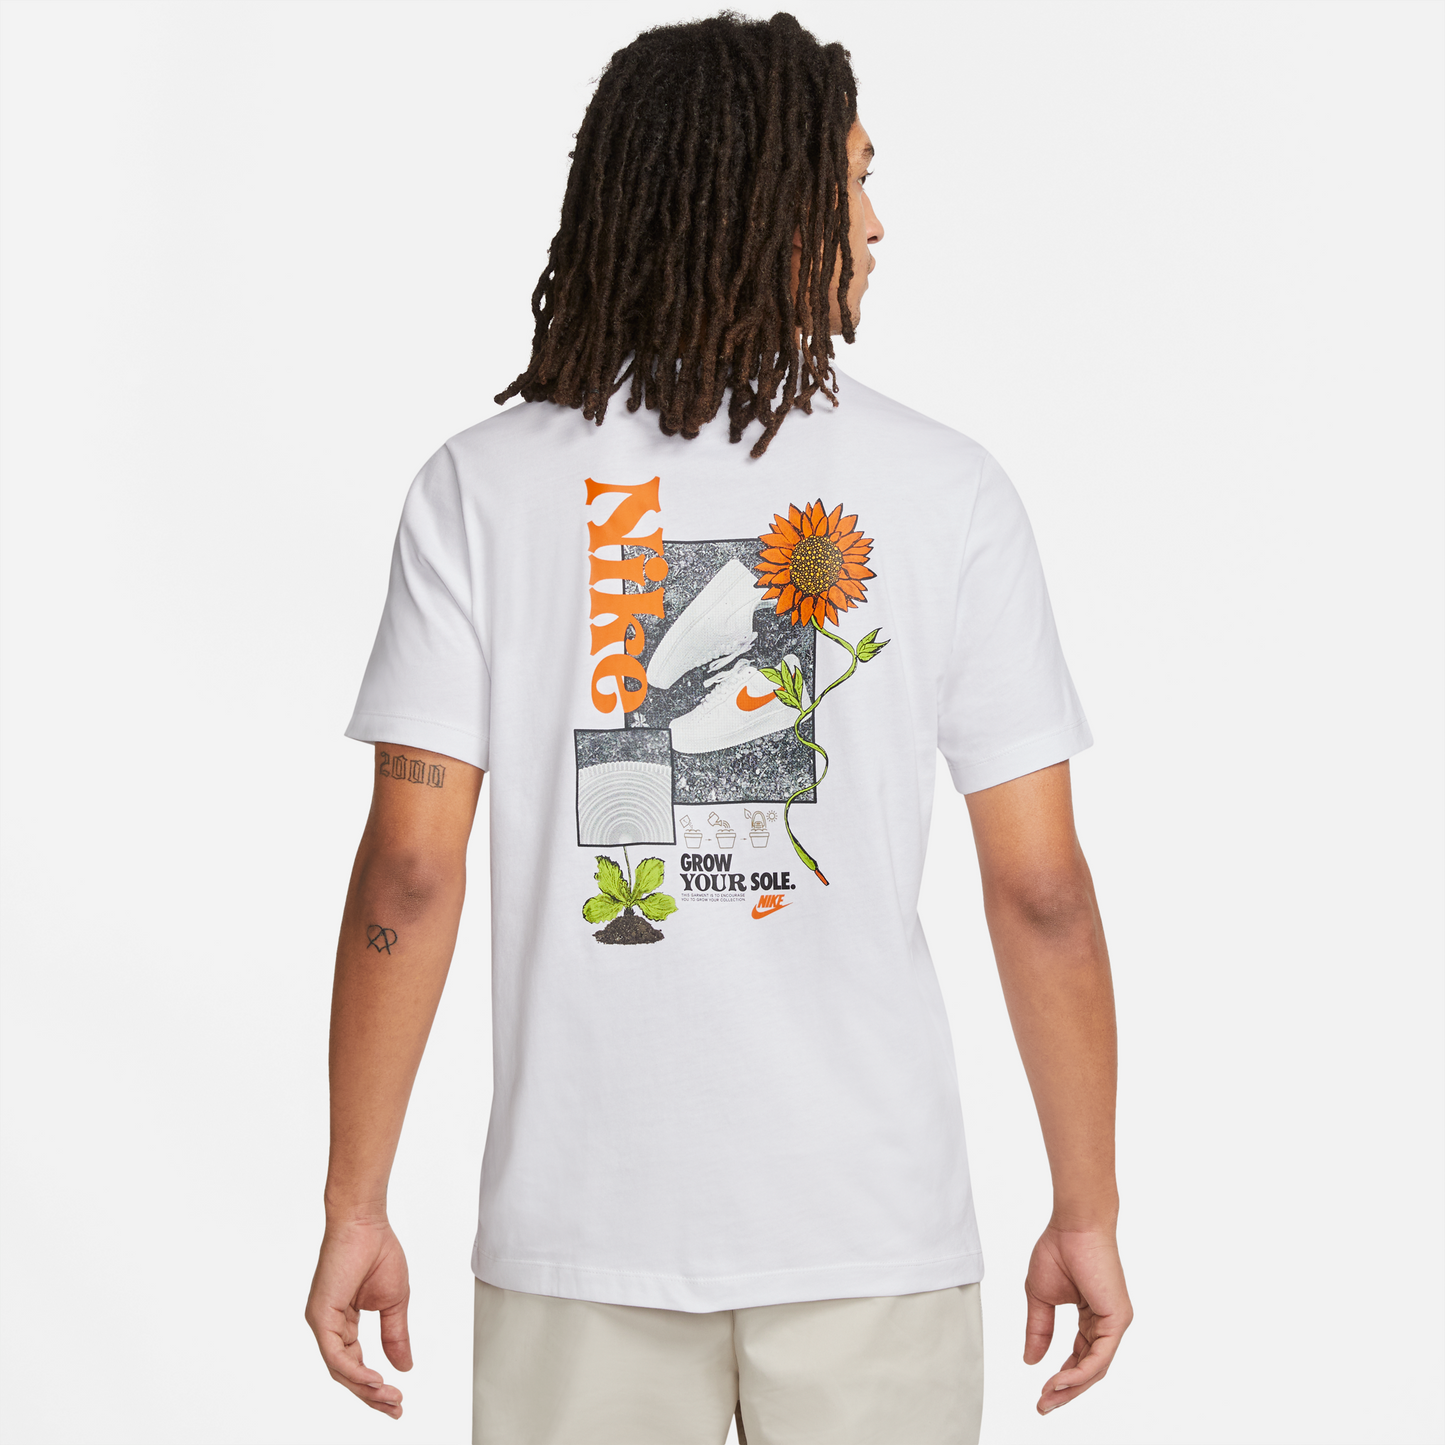 Nike Sole T-Shirt